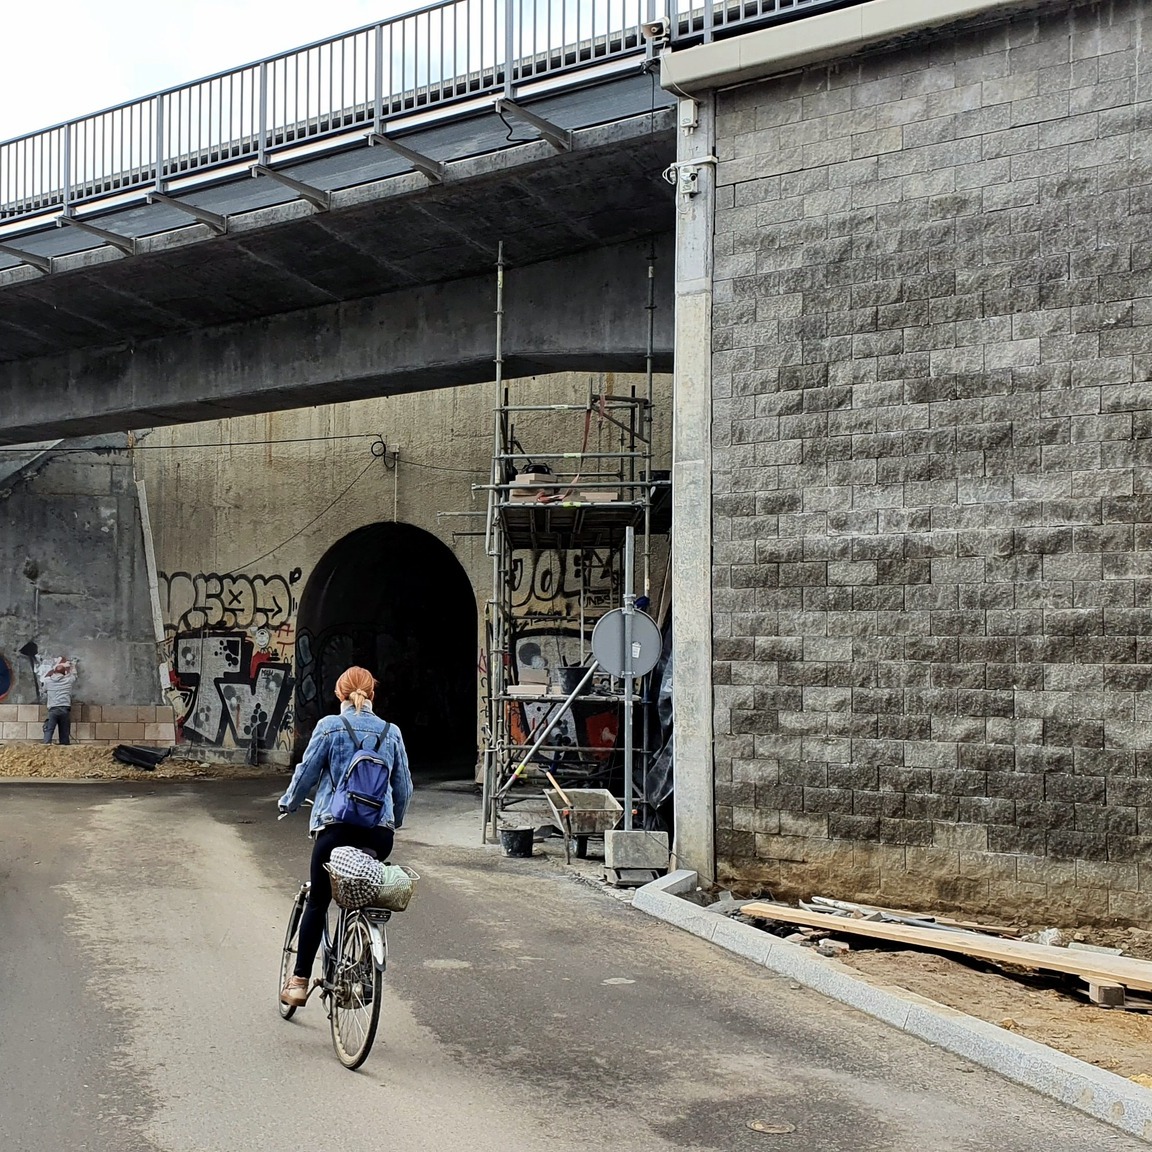 Zdjęcia przedstawiają prace asfaltowe przy wiadukcie kolejowym na ul. Miodowej w Krakowie. Wiadukt jest zamknięty dla ruchu samochodowego.